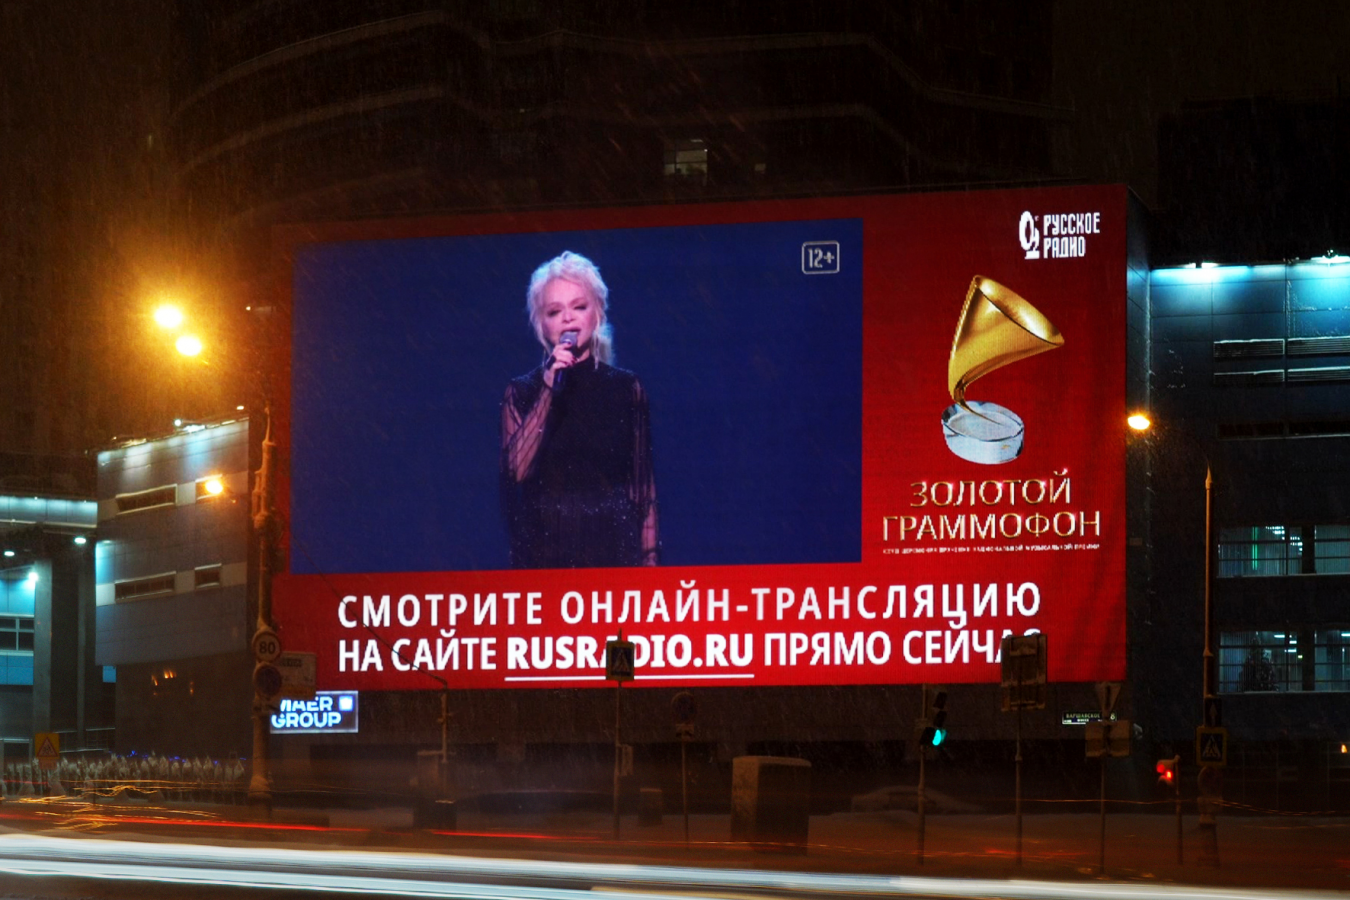 Премия «Золотой граммофон» транслировалась на медиафасадах Maer